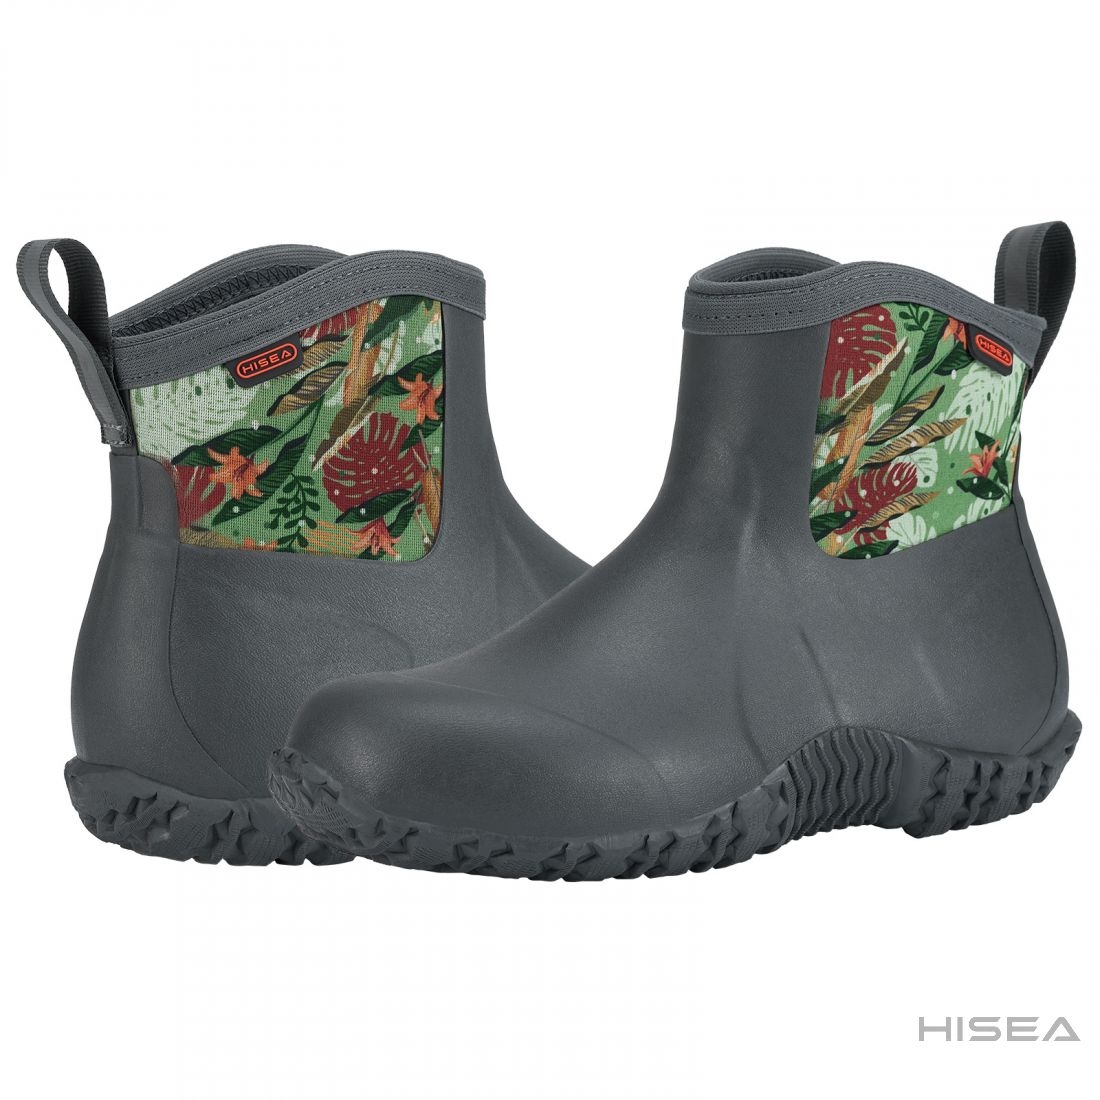 HISEA Women's Rain Boots Waterproof Garden Boots Ladies Knee High Wellies Comfort Anti-slip Outsole 